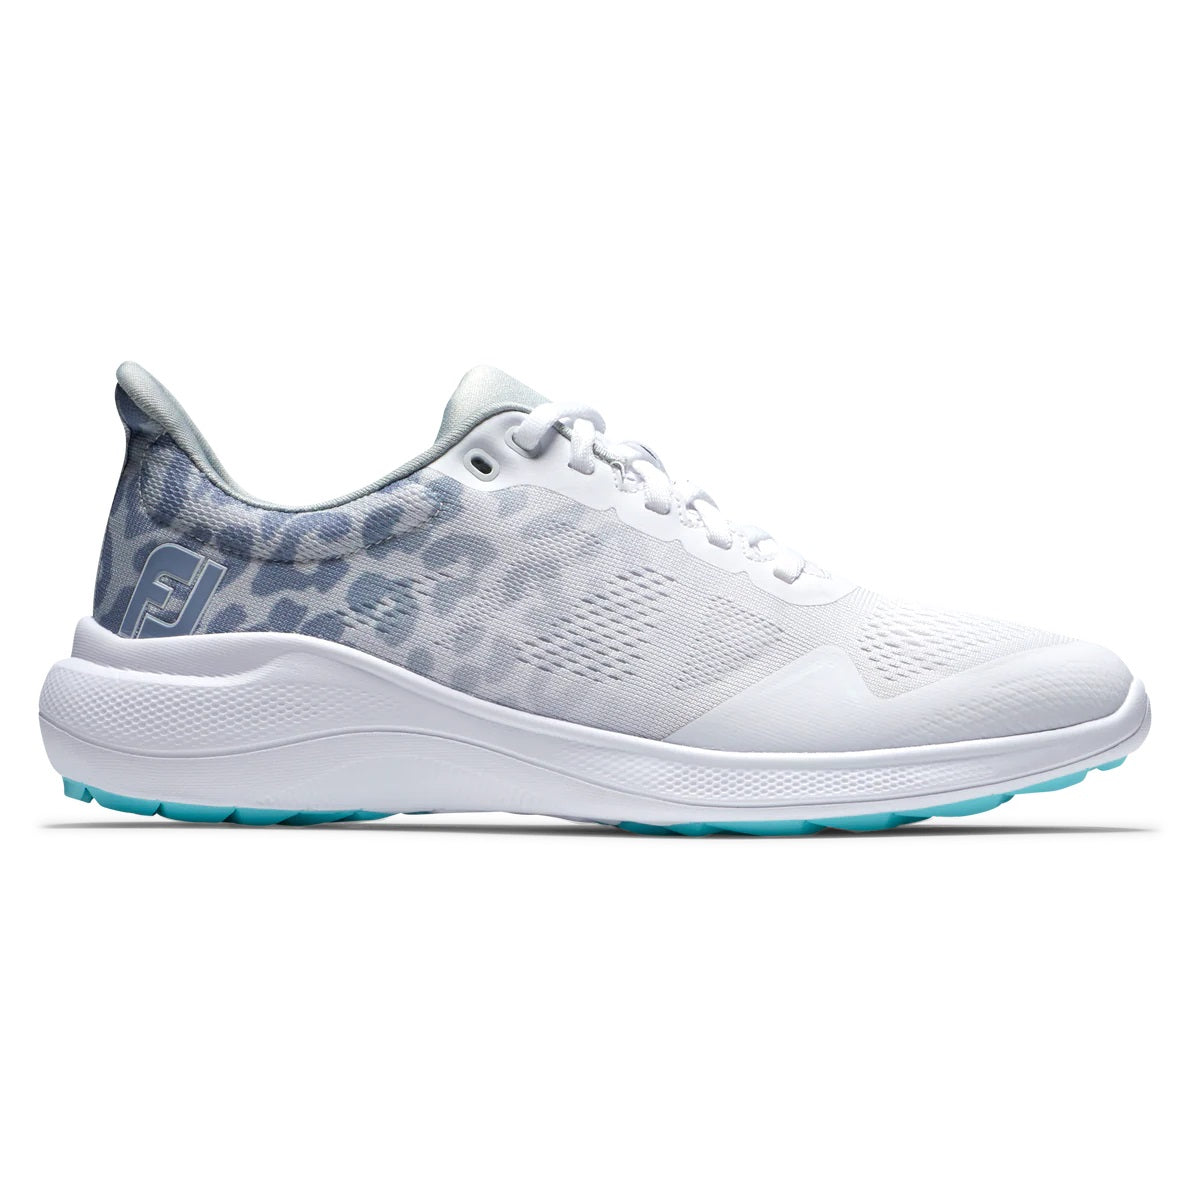 FootJoy Women's Flex Golf Shoes White/Grey/Multi 95767 (Previous Season Style)